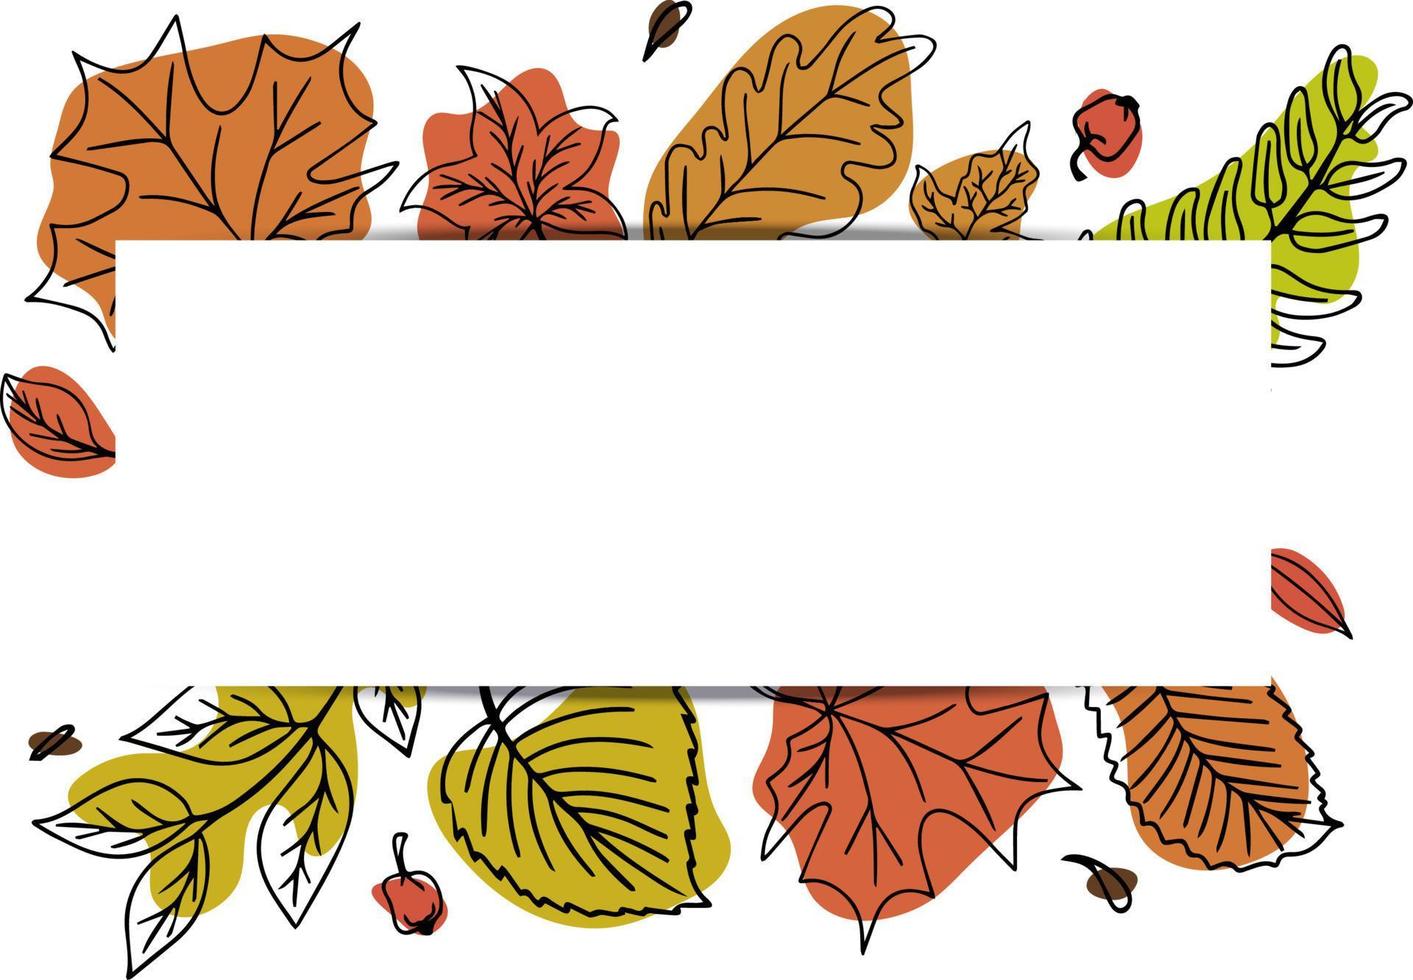 banner horizontal vectorial con coloridas hojas de otoño en estilo de garabato dibujado a mano. vector